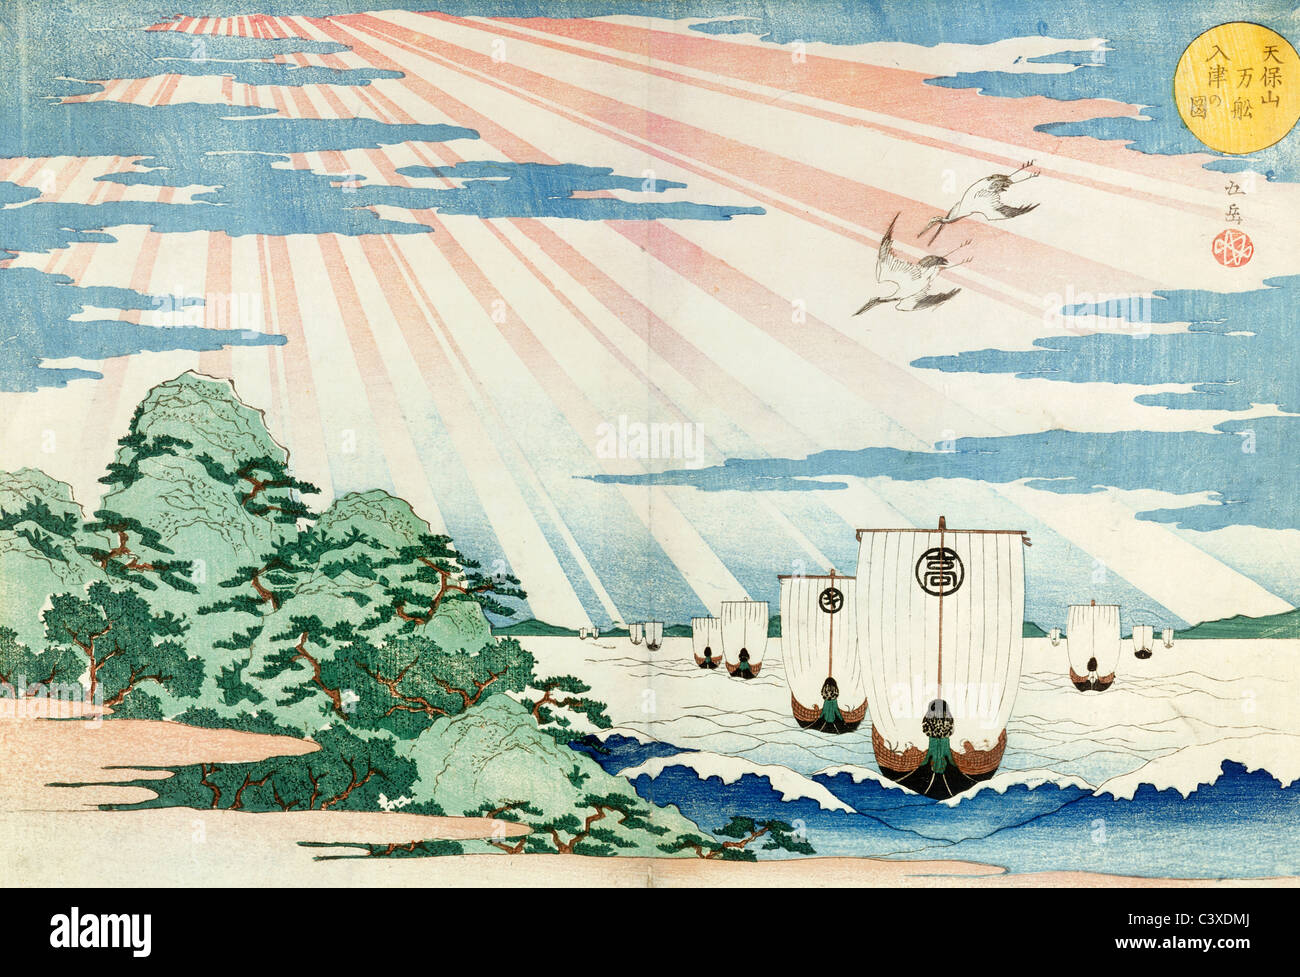 Les navires entrant dans le port, par Gakutei Tempozan. Le Japon, 19e siècle Banque D'Images